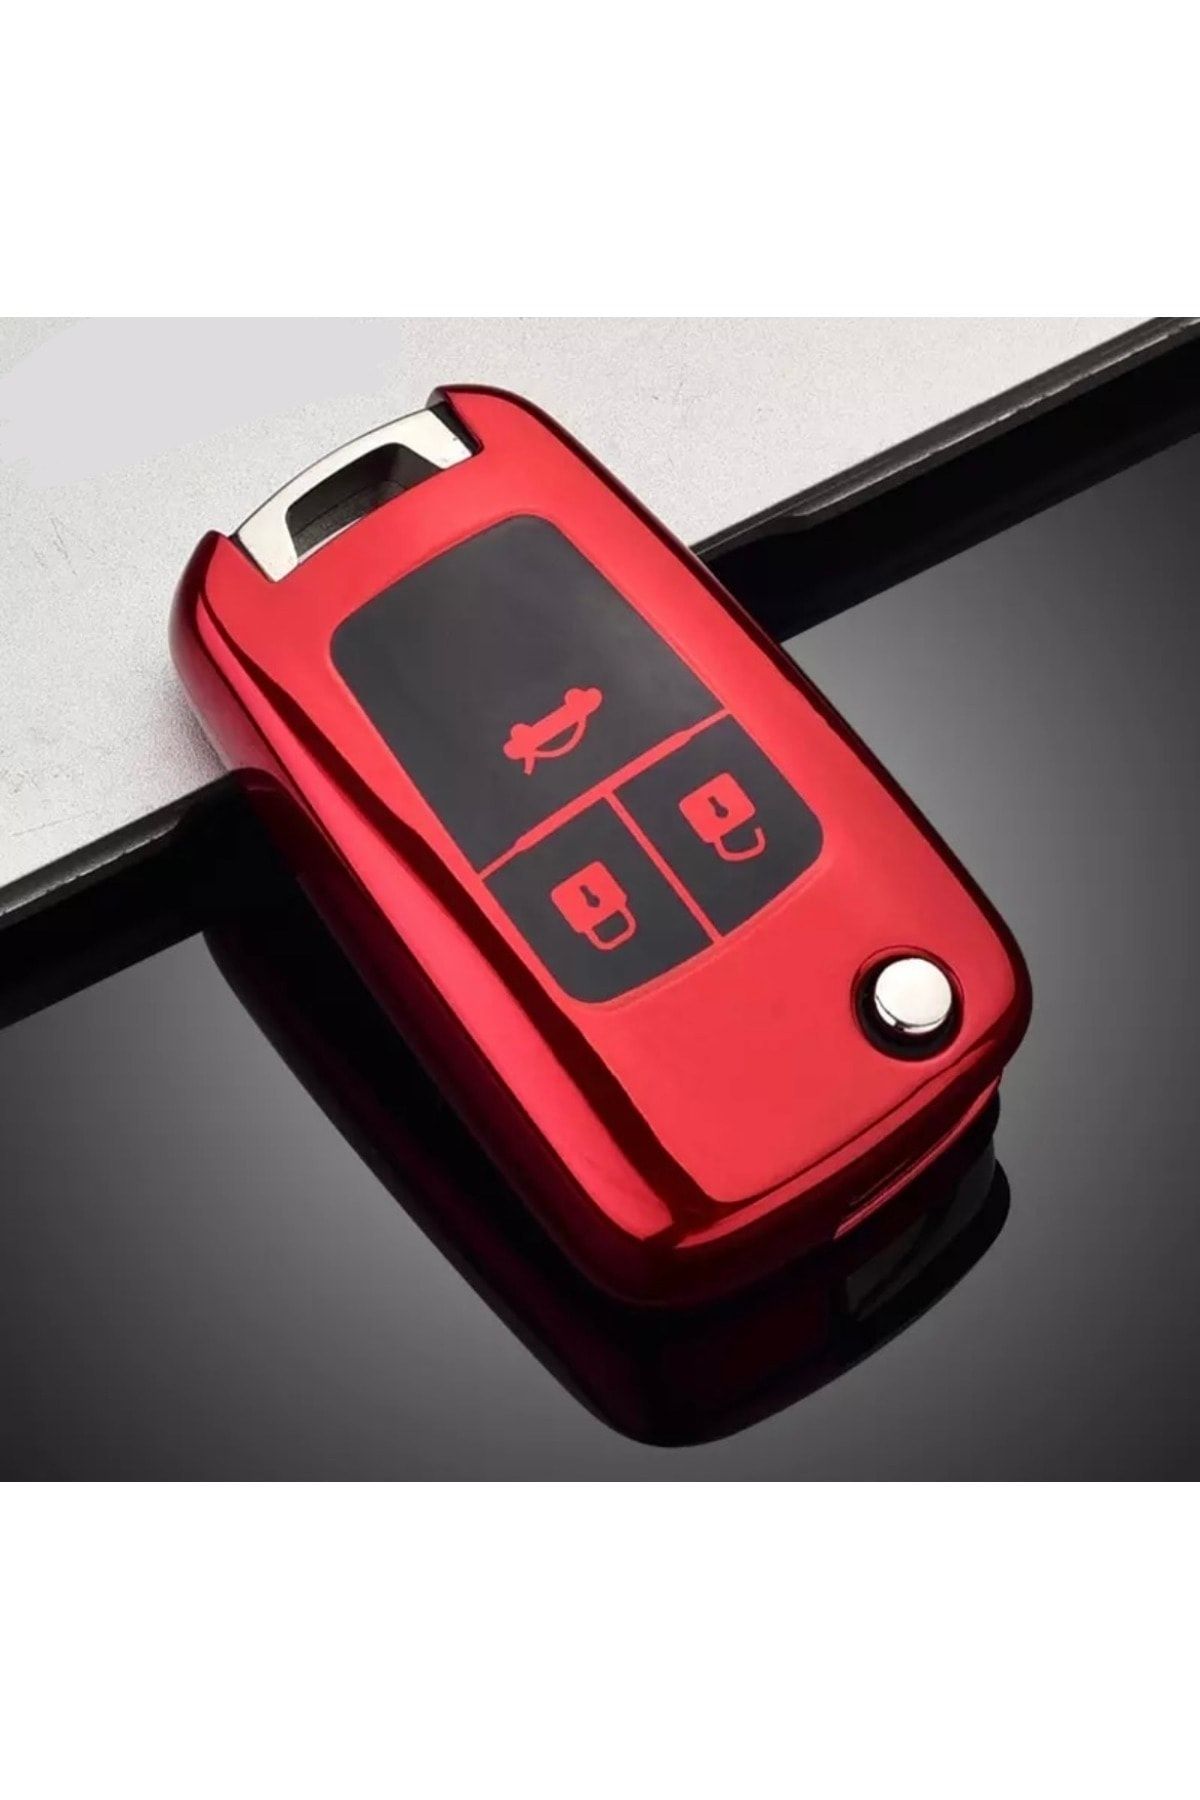 YıldızTuning Opel Mokka Glossy Key Case Red Color